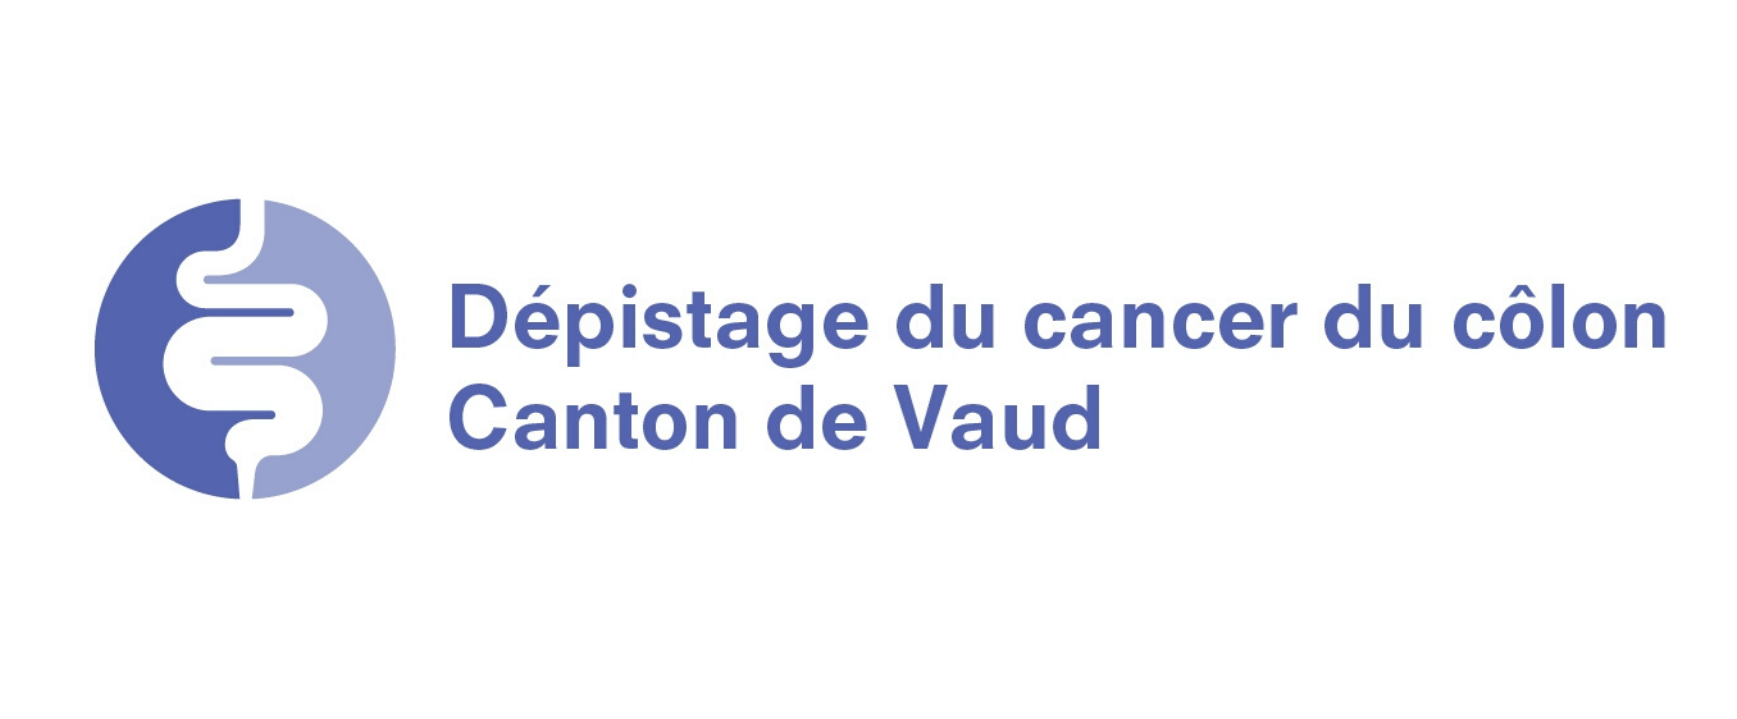 Dépisatge du cancer du côlon Canton de Vaud